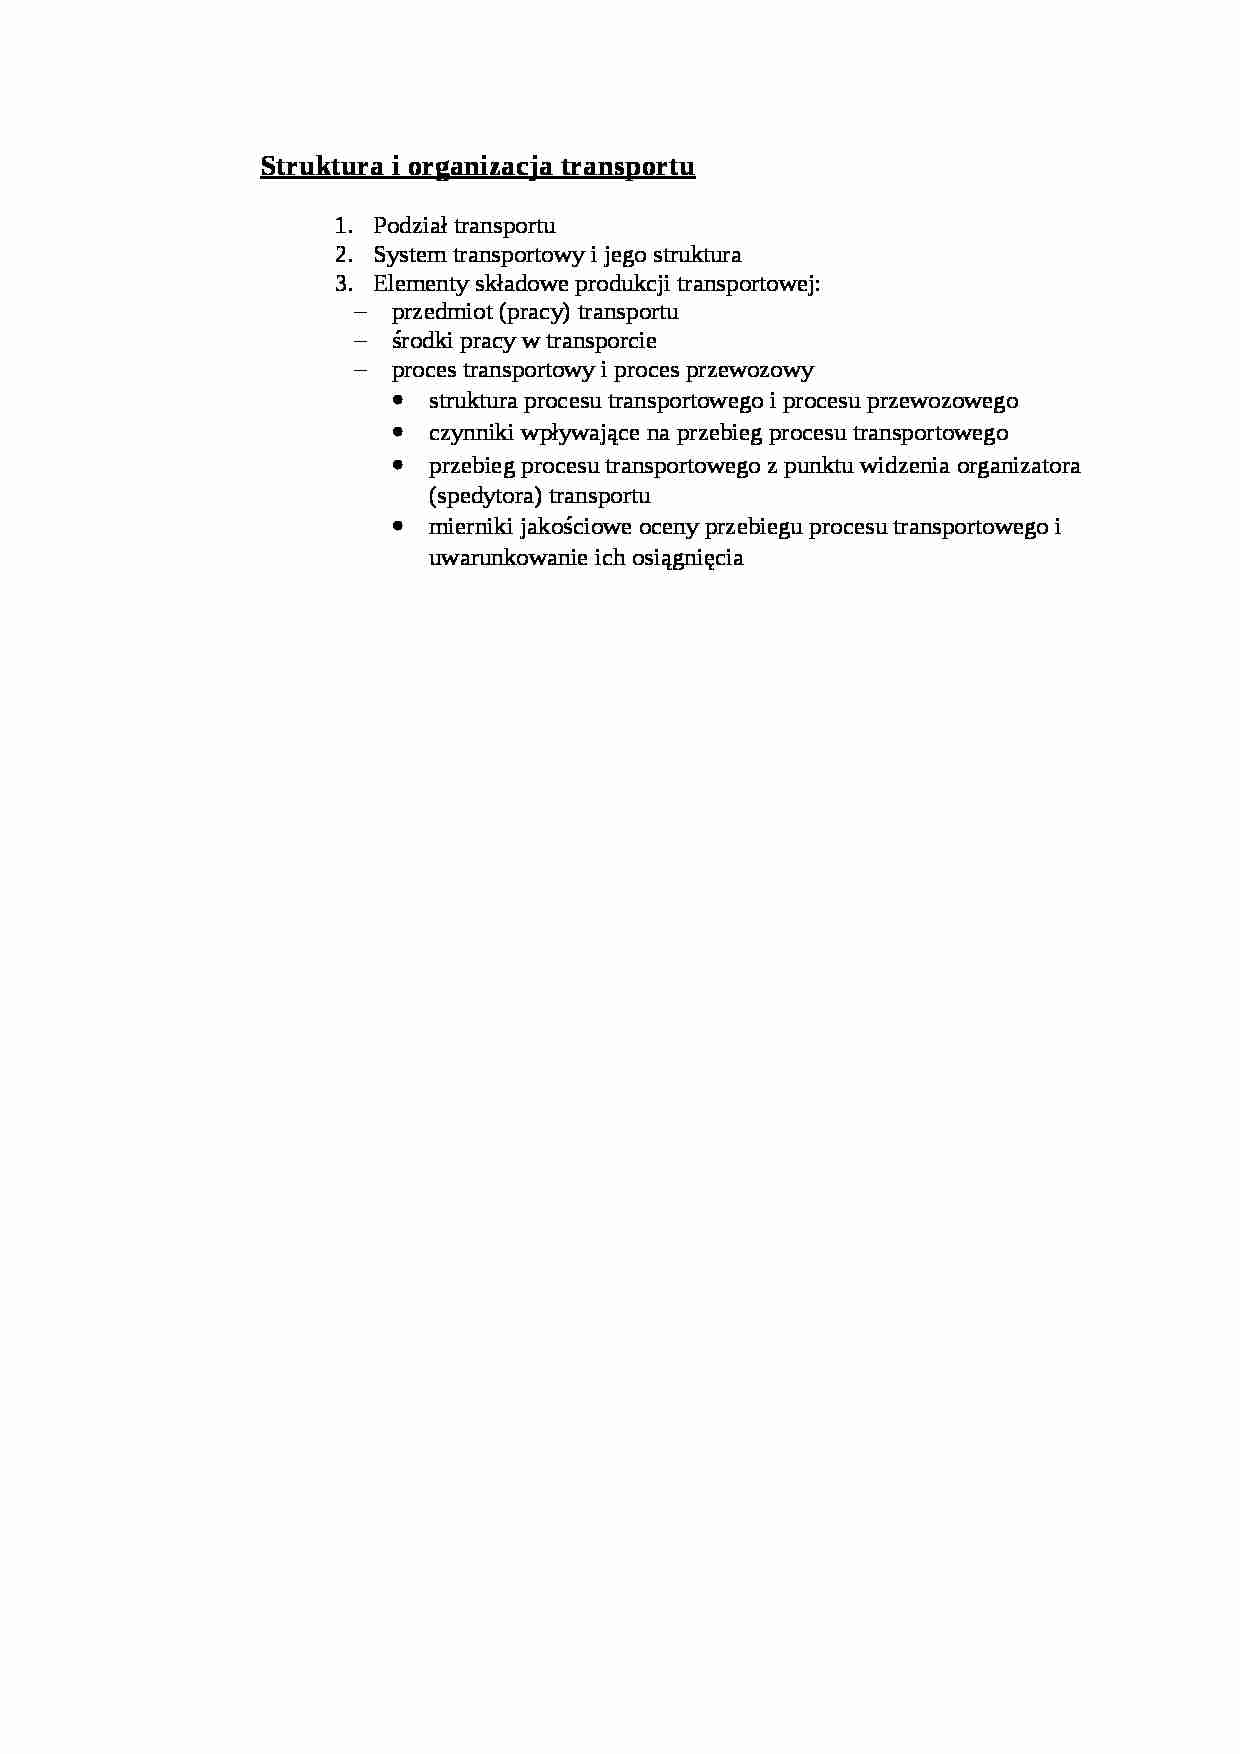 Struktura i organizacja transportu - wykład - strona 1